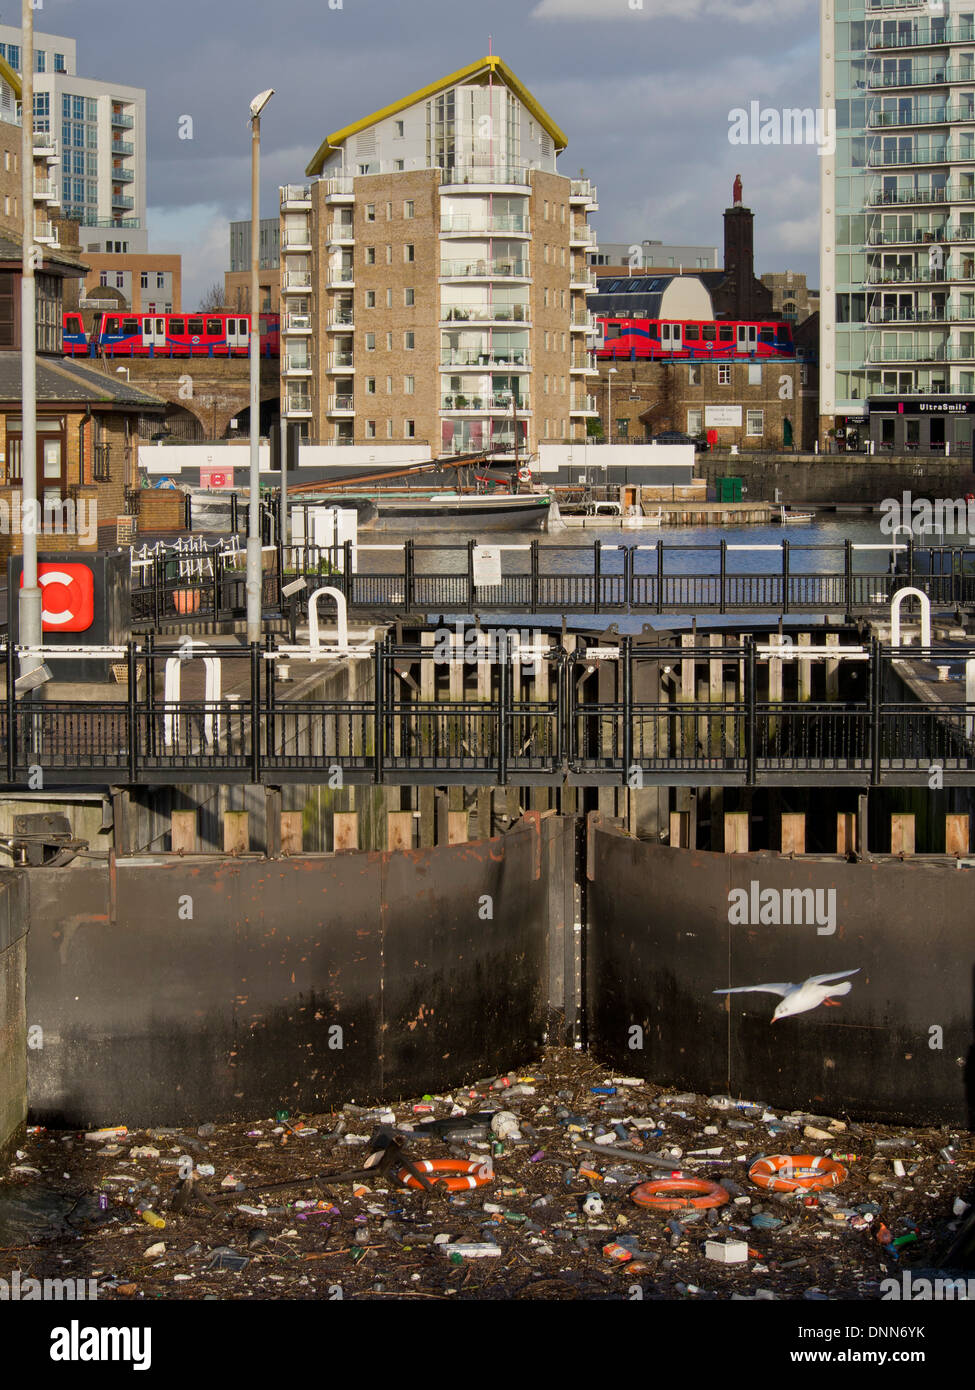 Les déchets en plastique et Zoé par Limehouse Basin près de Tamise avec le peuplier et le train DLR en arrière-plan lointain, London, UK Banque D'Images